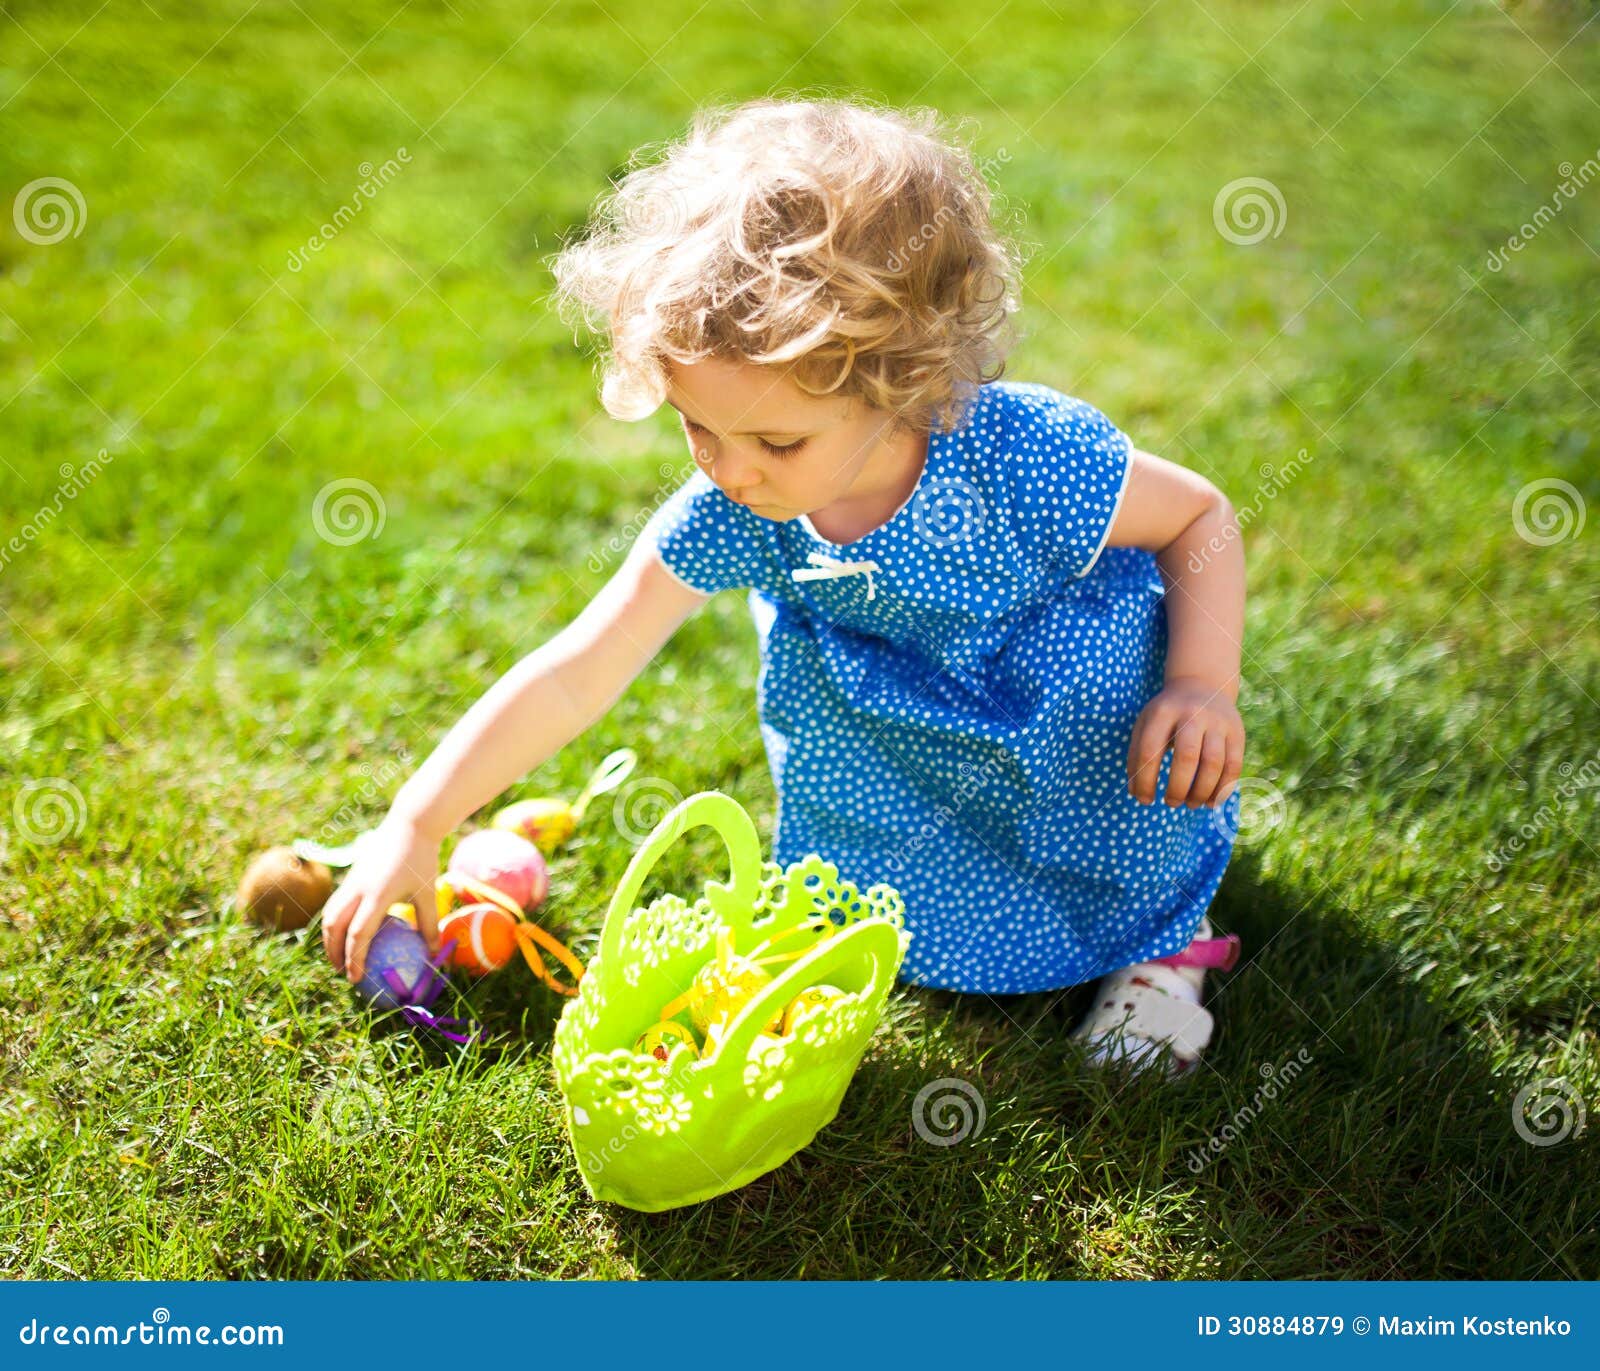 little girl on an easter egg hunt